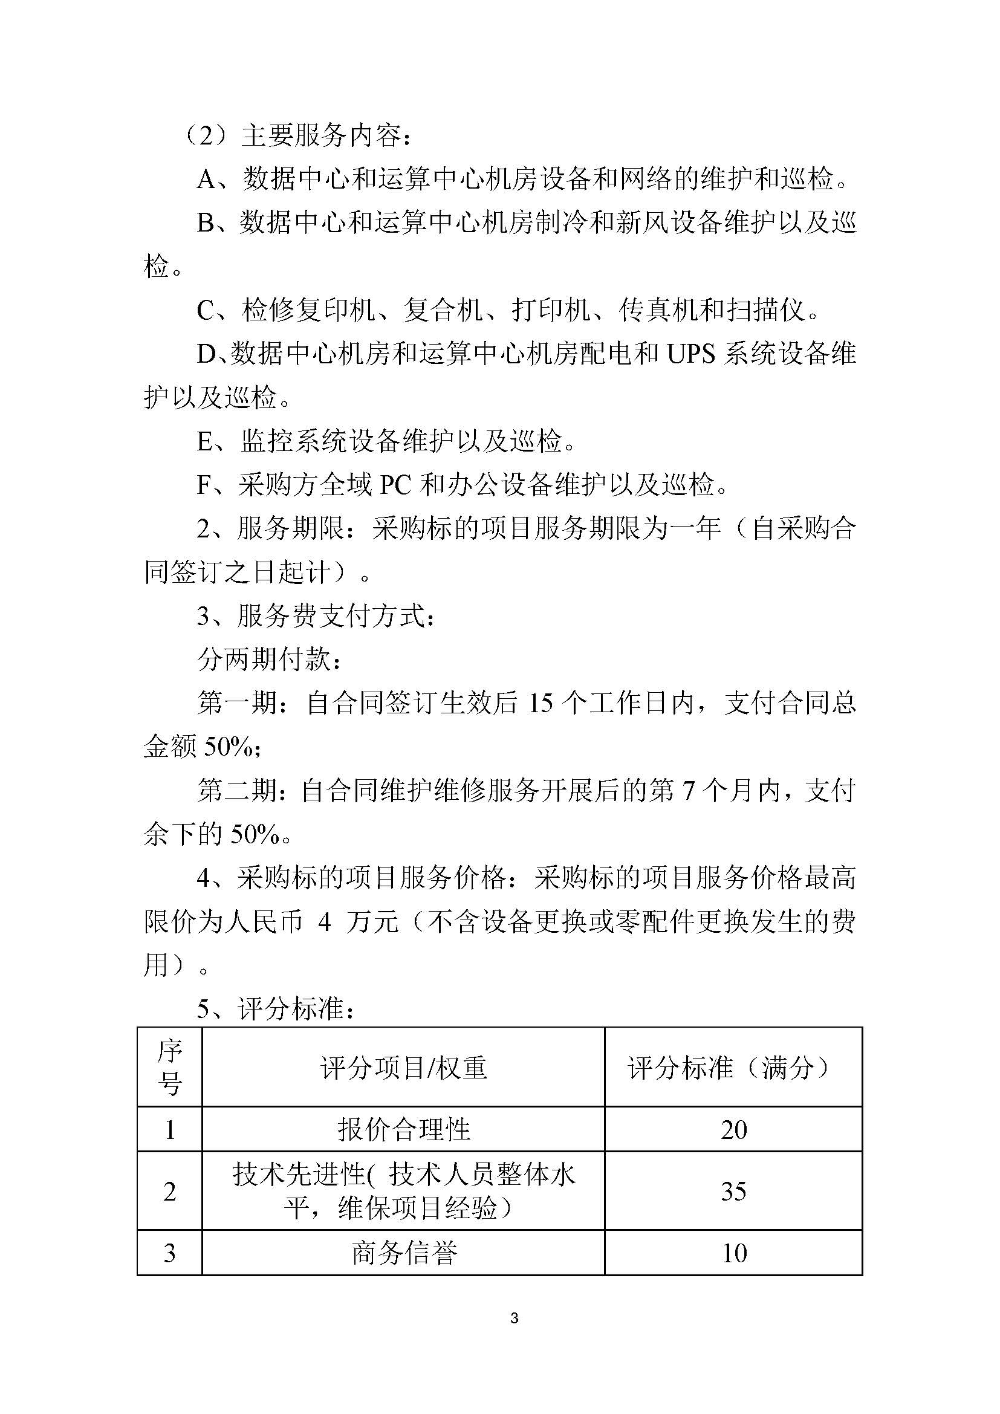 210420江门市国土测绘大队采购计算机设备维修和保养服务等项目采购公告 (3).jpg